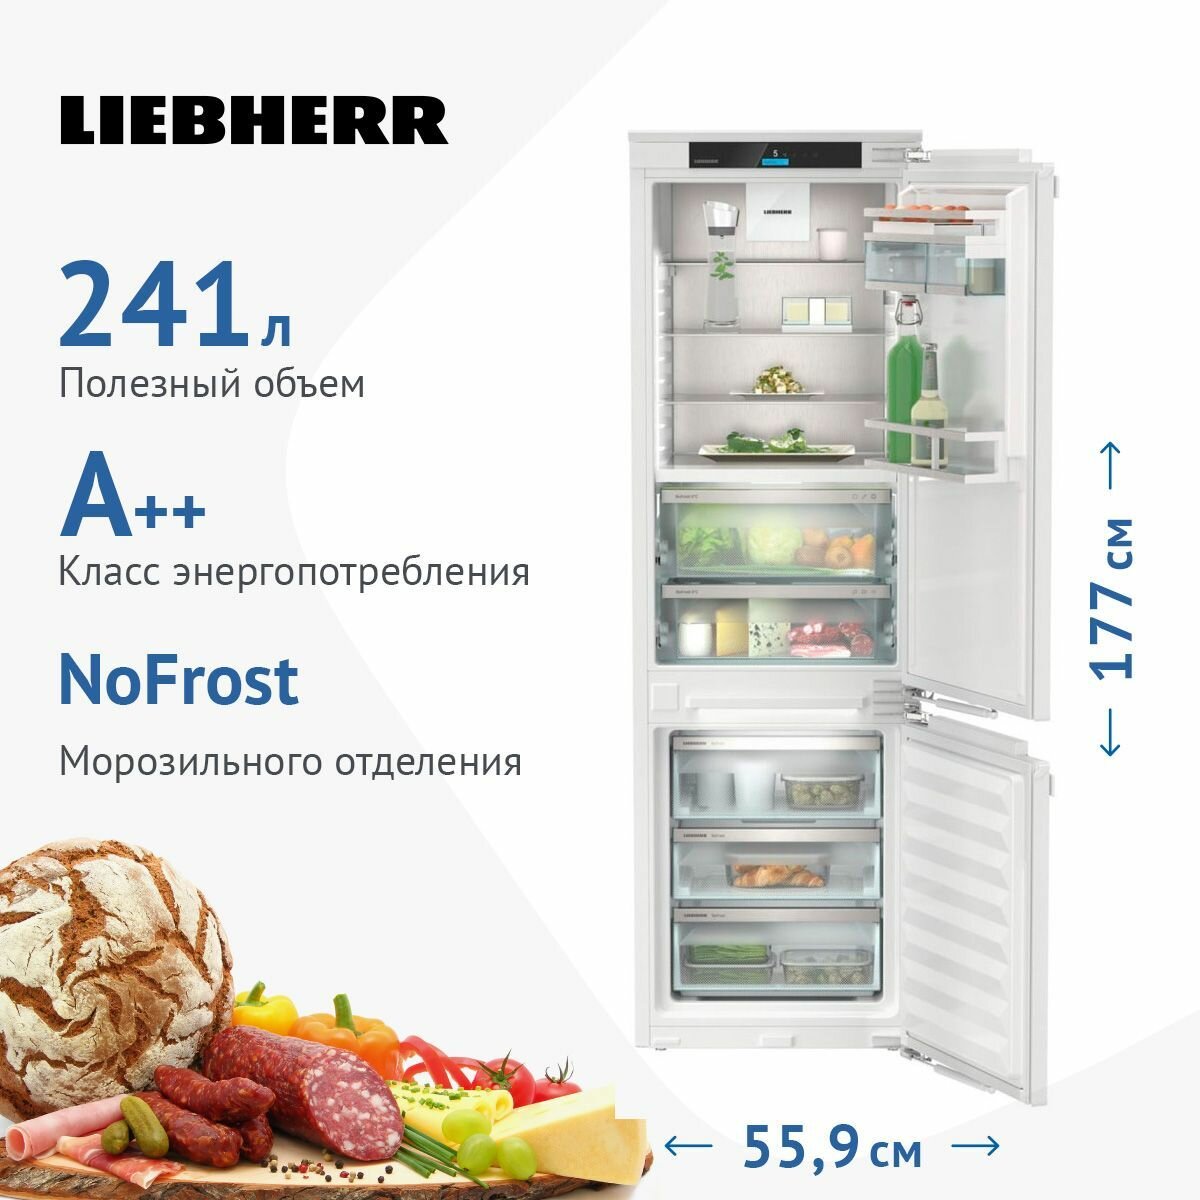 Встраиваемый холодильник Liebherr - фото №1